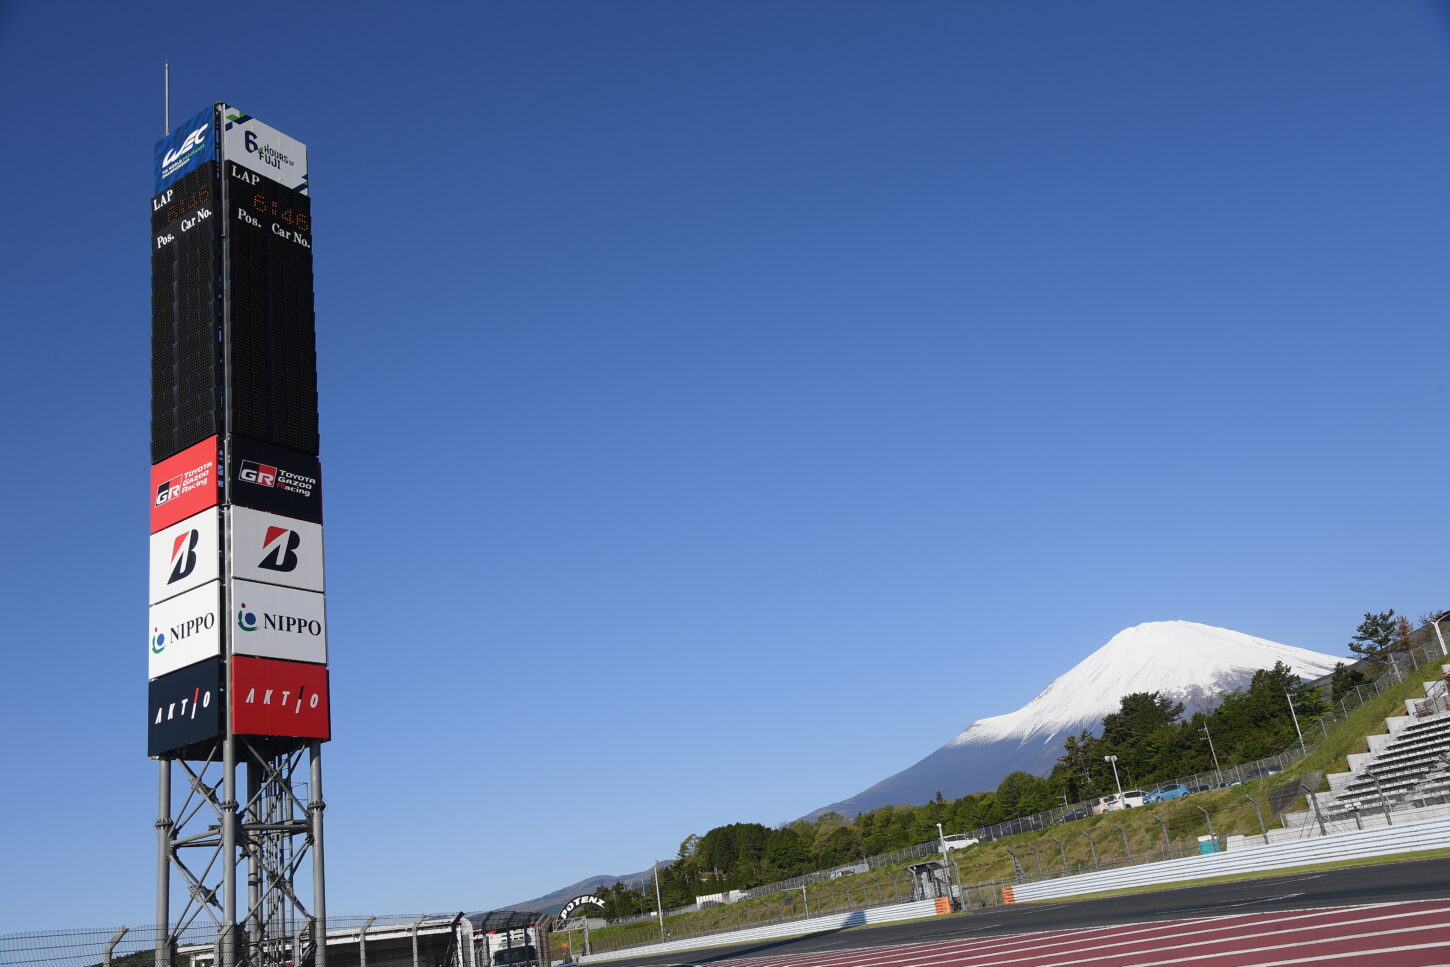 世界水準のレーシングコースを体験走行 富士スピードウェイでレーサー気分を味わおう 静岡県観光公式ブログ